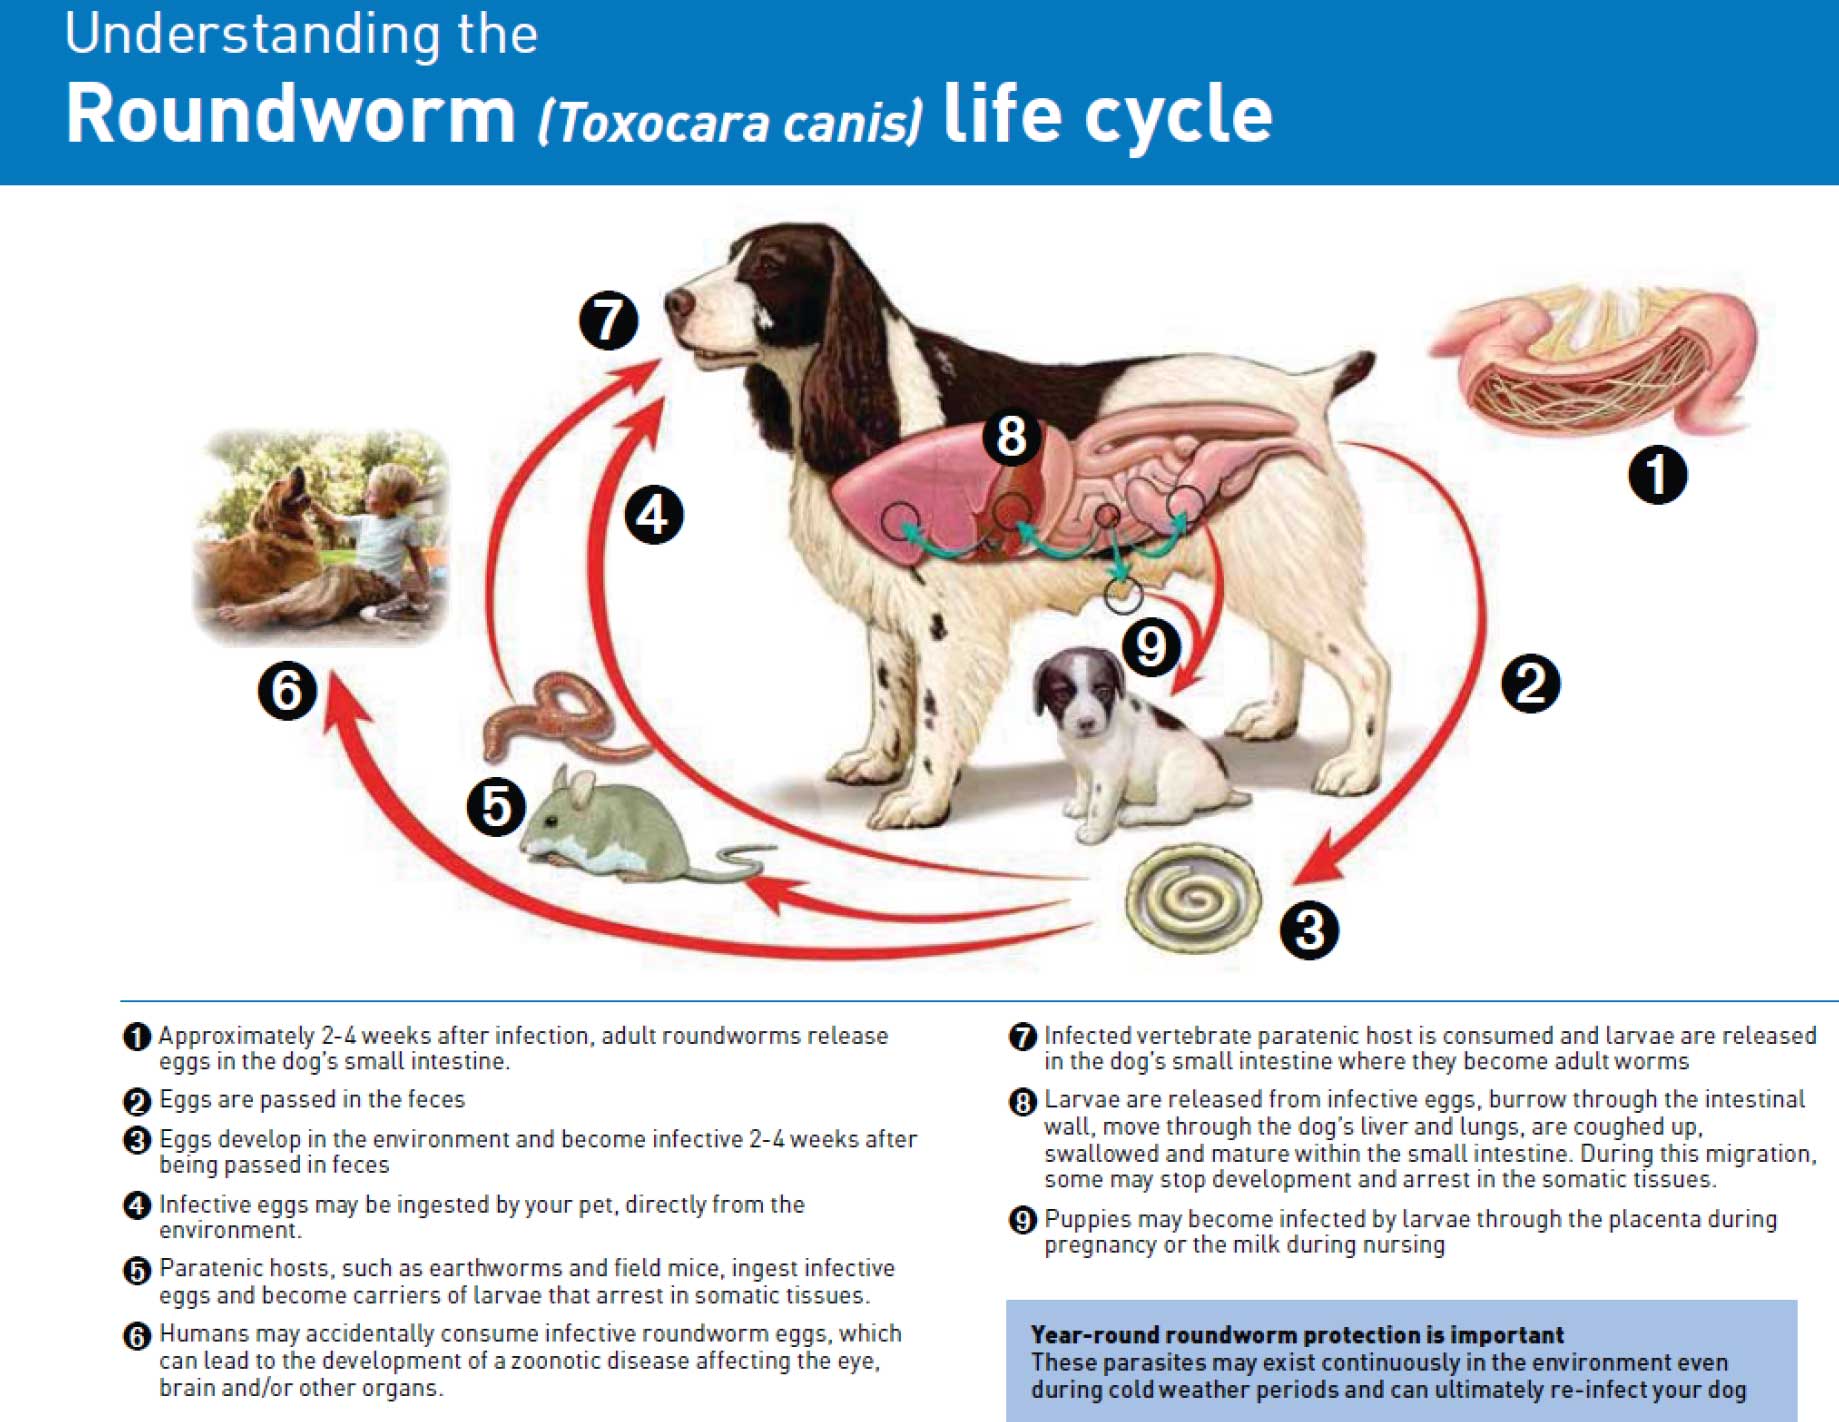 Roundworm lifecycle